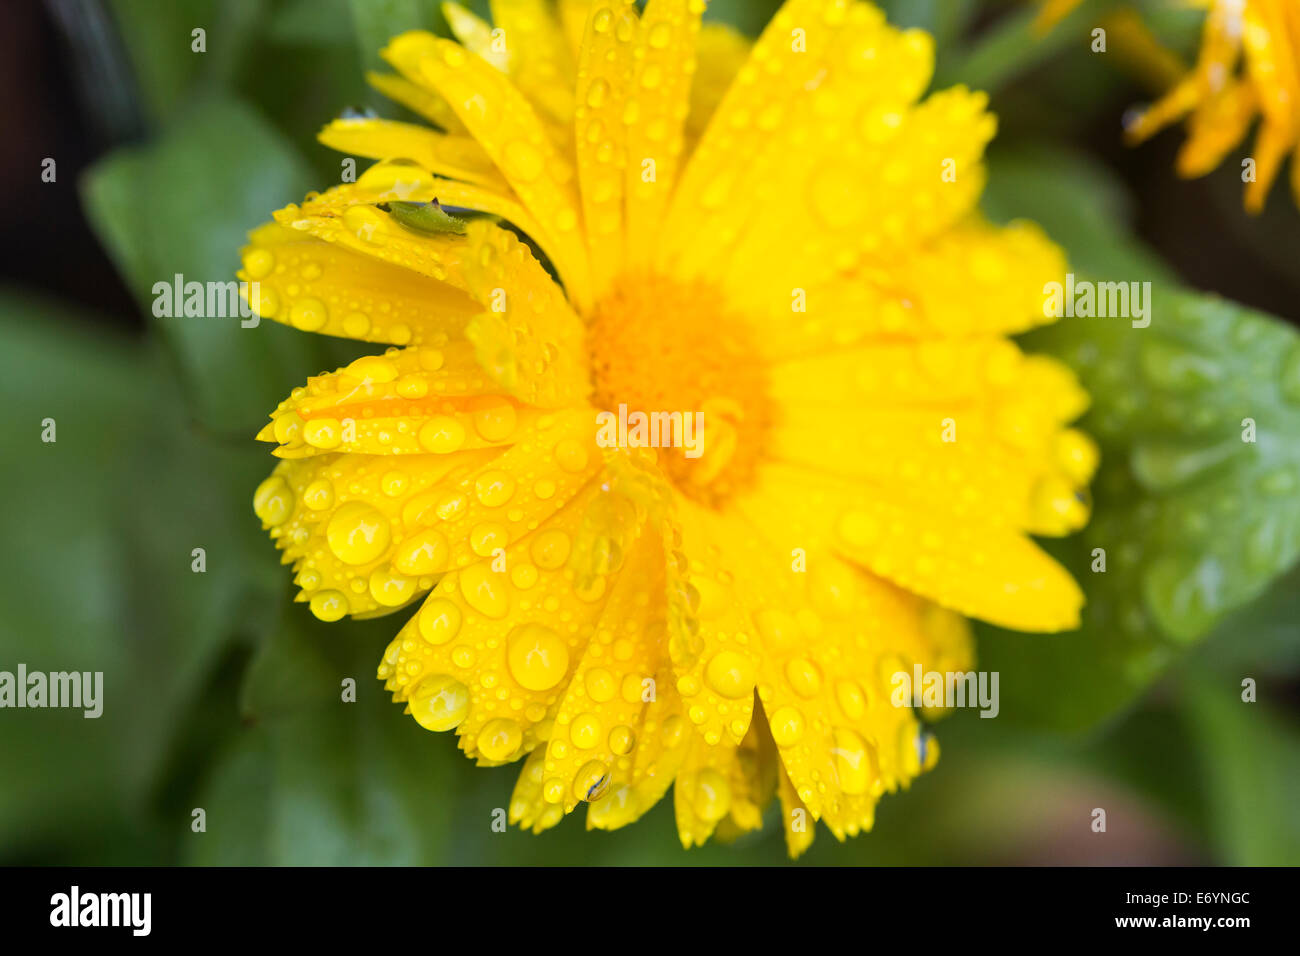 Las gotas de lluvia de verano sobre una planta de jardín caléndula flor amarilla Foto de stock